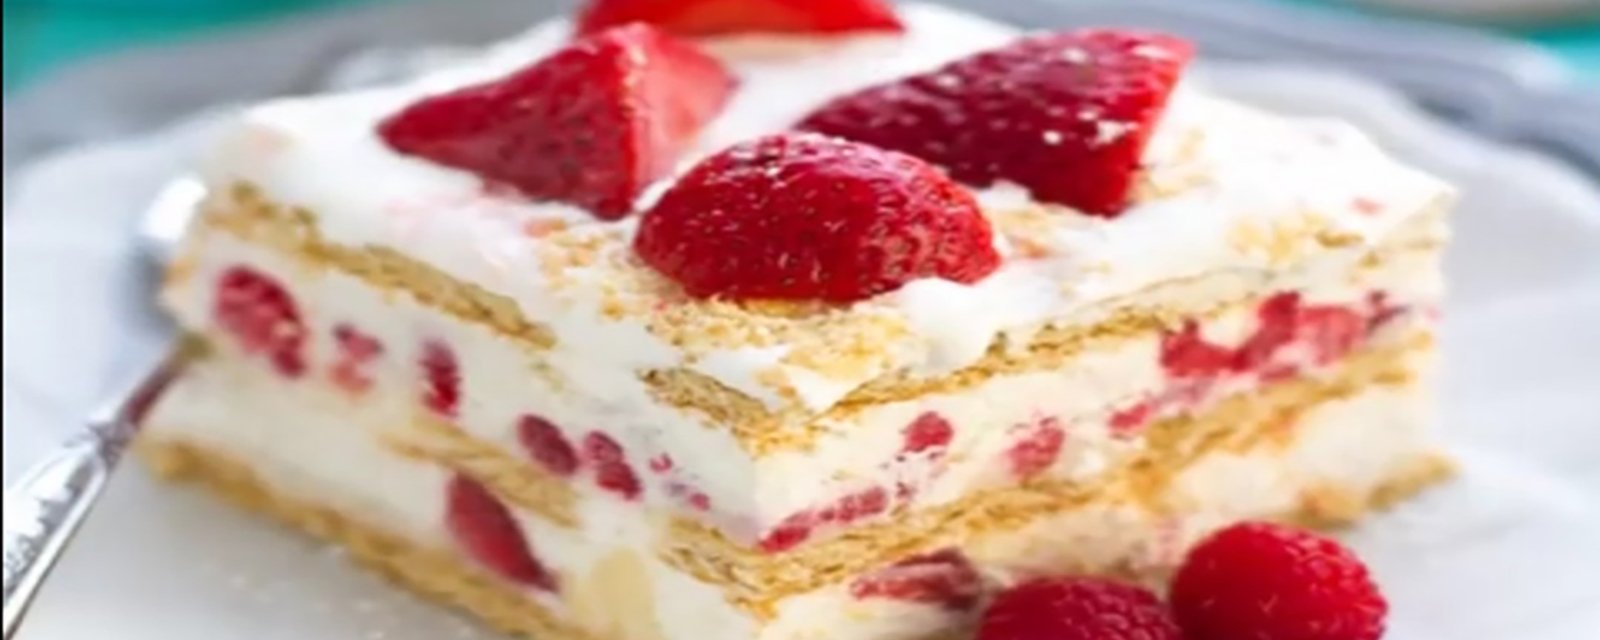 Gâteau aux fraises sans cuisson qui fera fureur auprès de vos invités